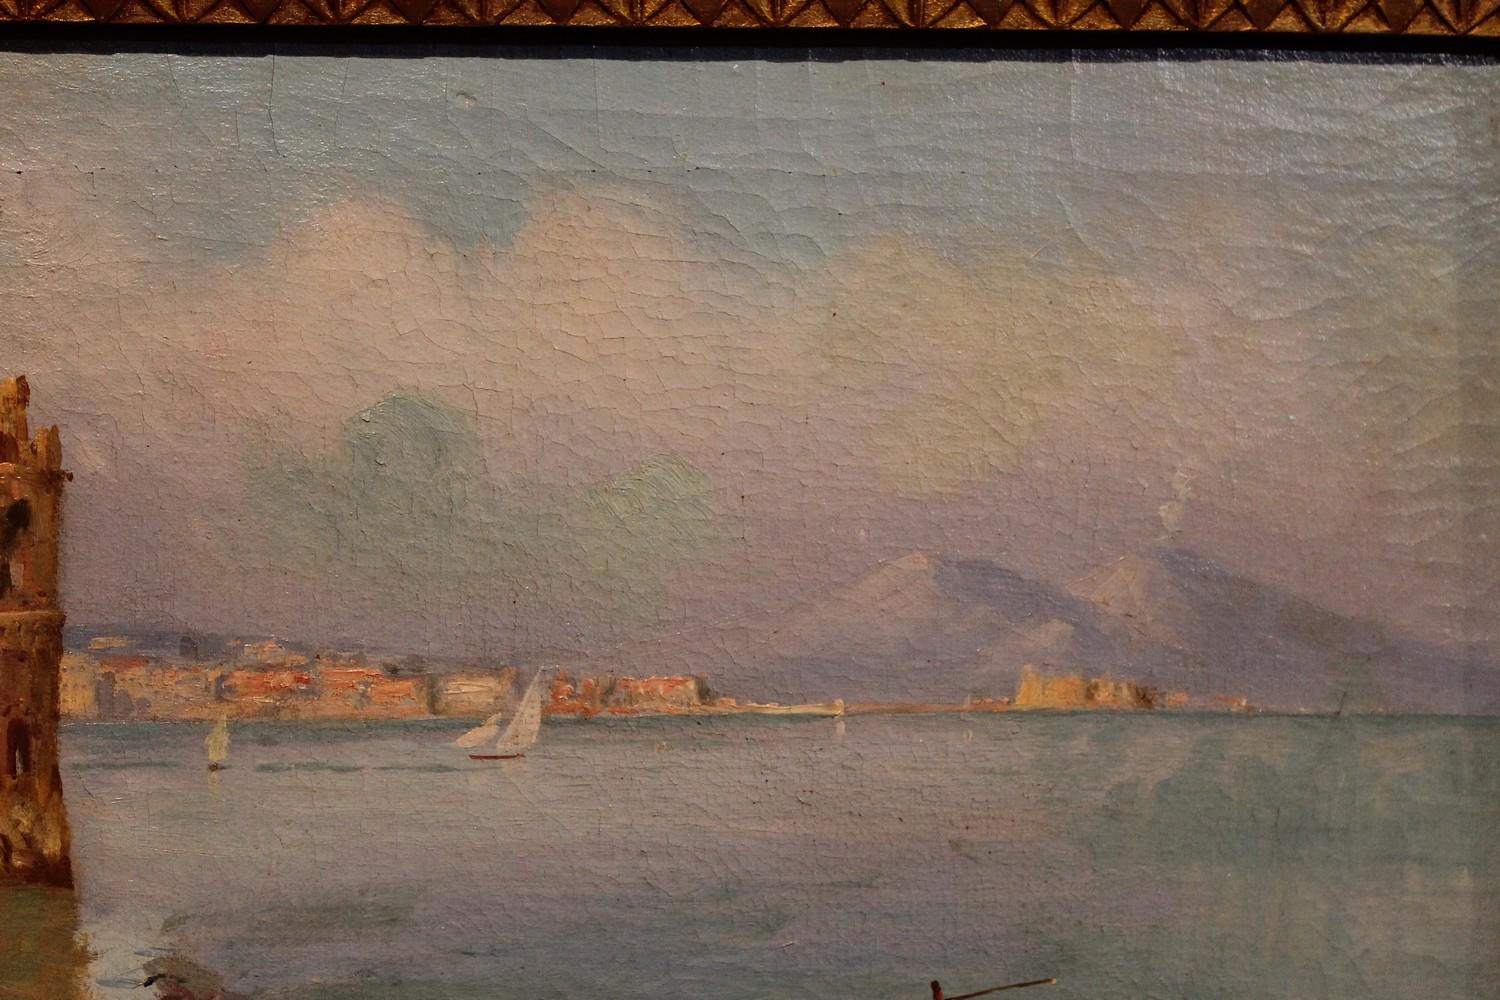 Italian Impressionist 19th Century Oil on Canvas Marine Landscape Painting  13